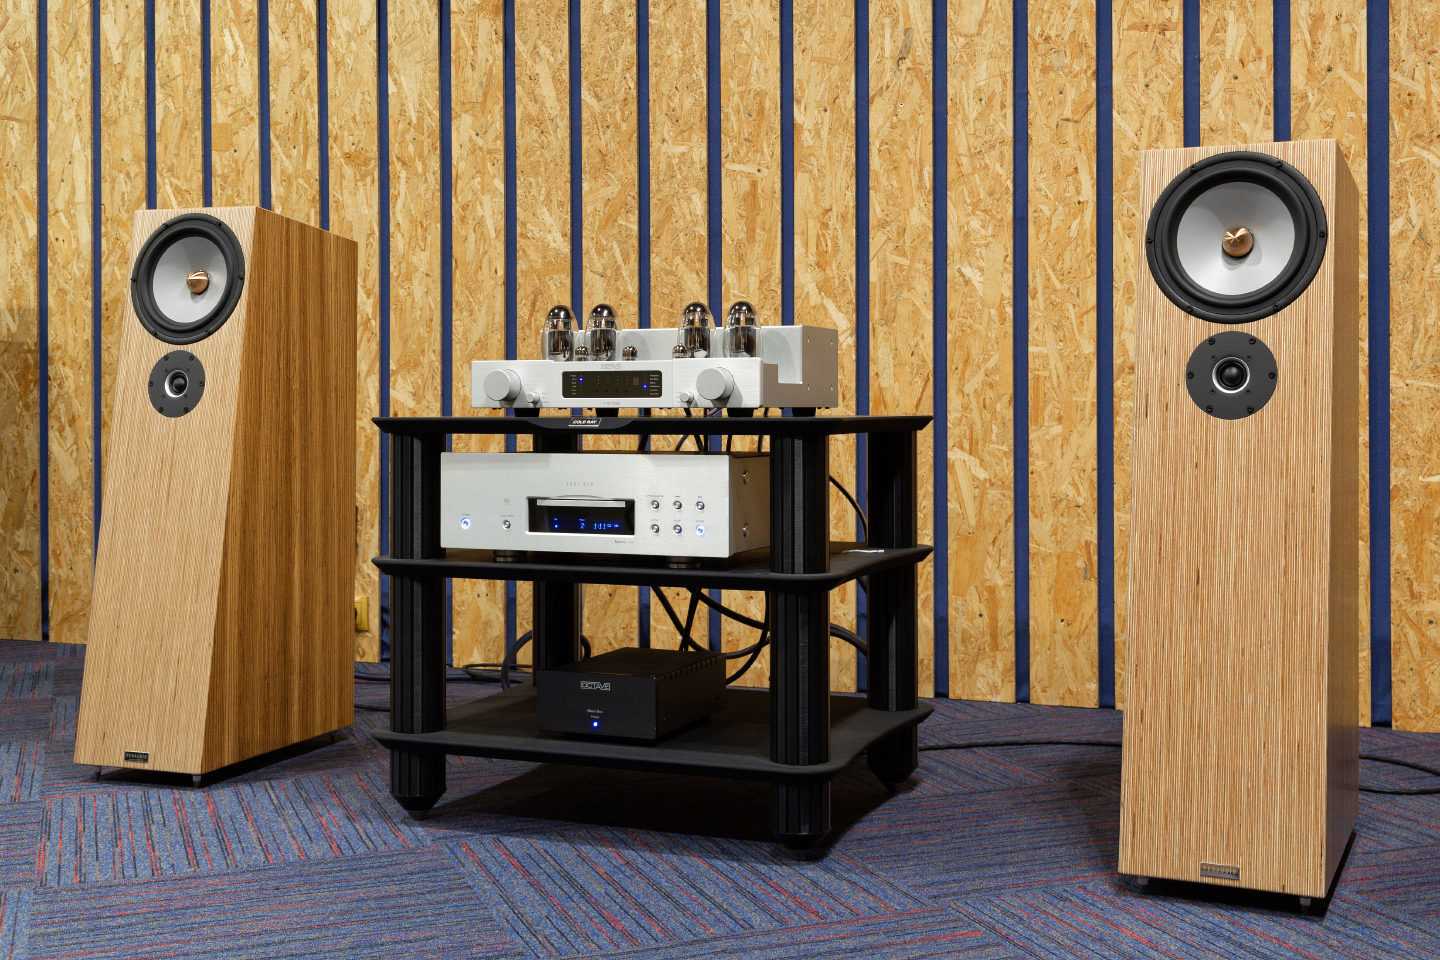 Деревянные диффузоры или звуковые диффузоры являются отличным акустическим лечением для тех, кто любит высококачественную прослушку меломанов и аудиофилов, и для тех кто делает музыку сводит музыкантов и диджеев